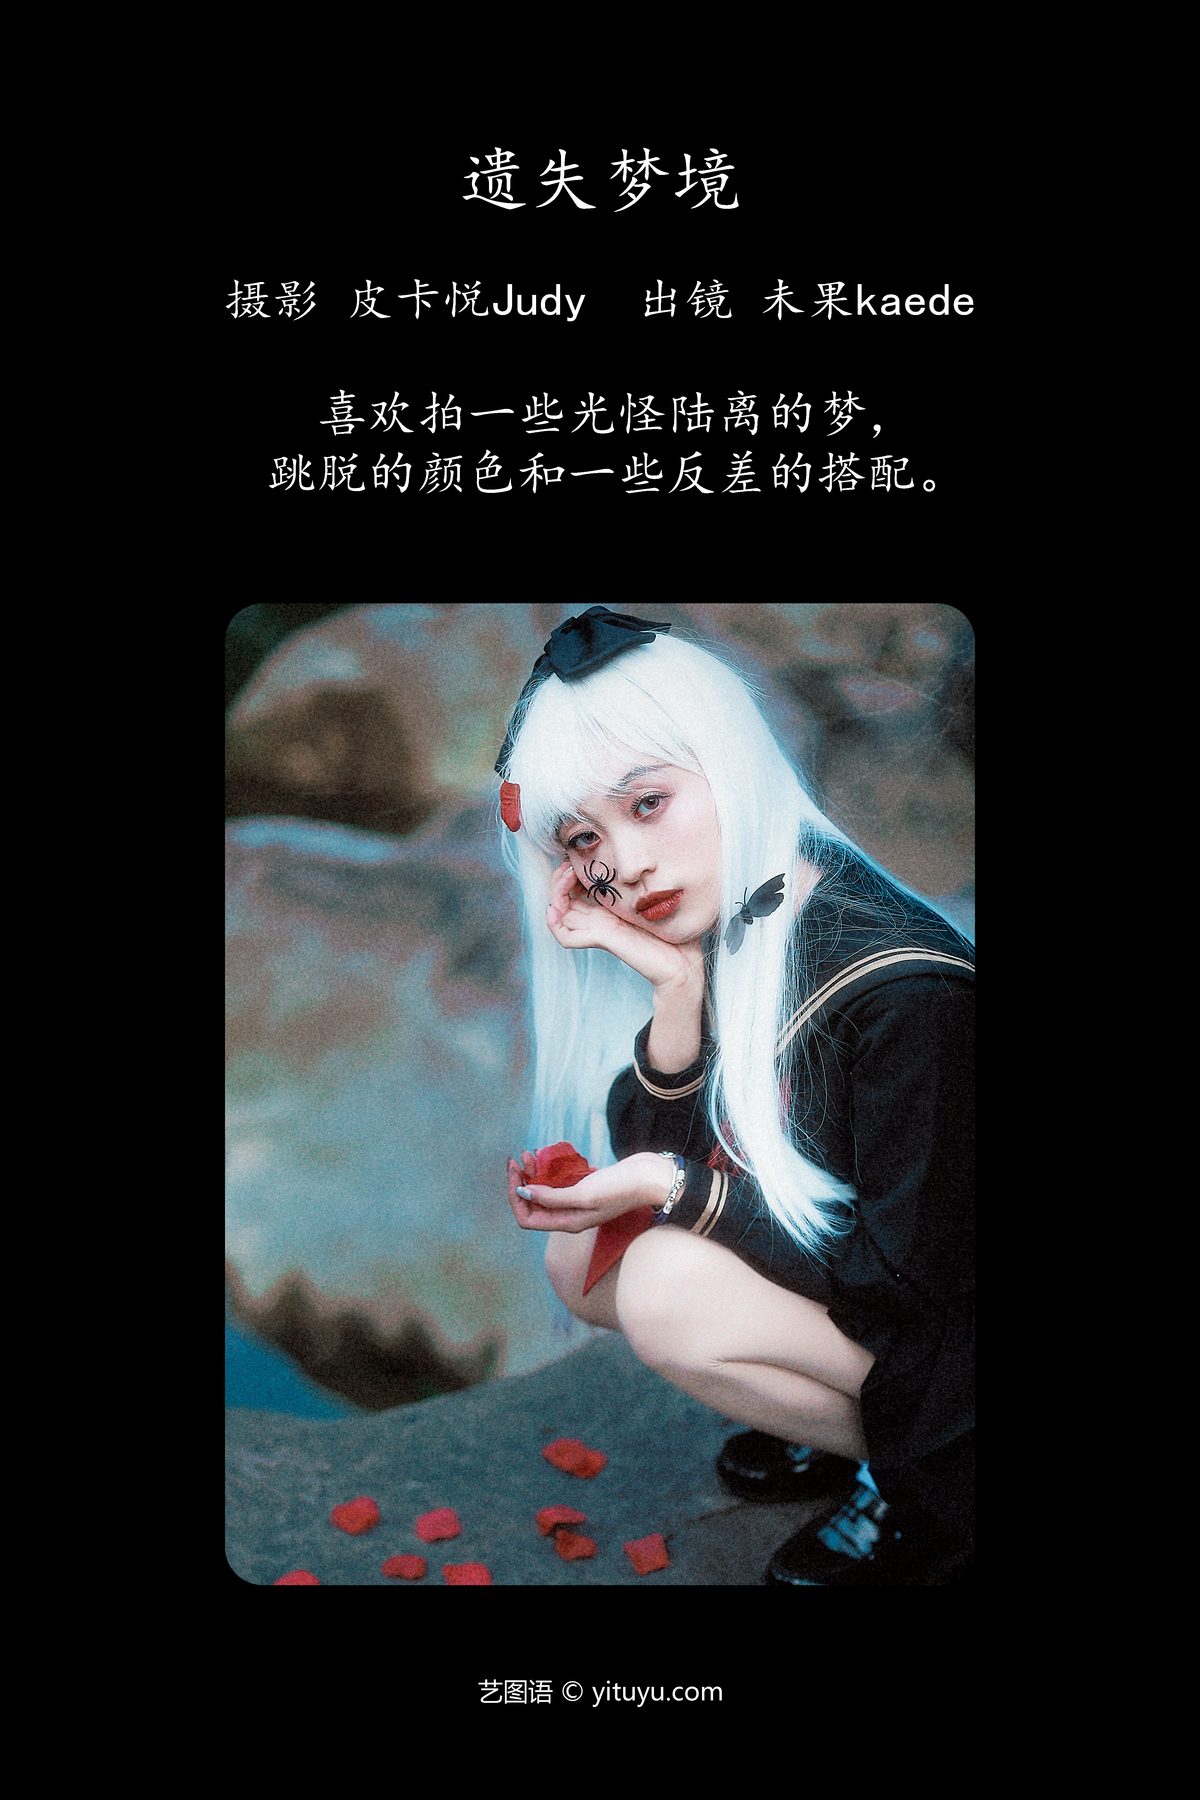 YiTuYu艺图语 Vol 5124 Wei Guo Kaede 0001 5269936566.jpg